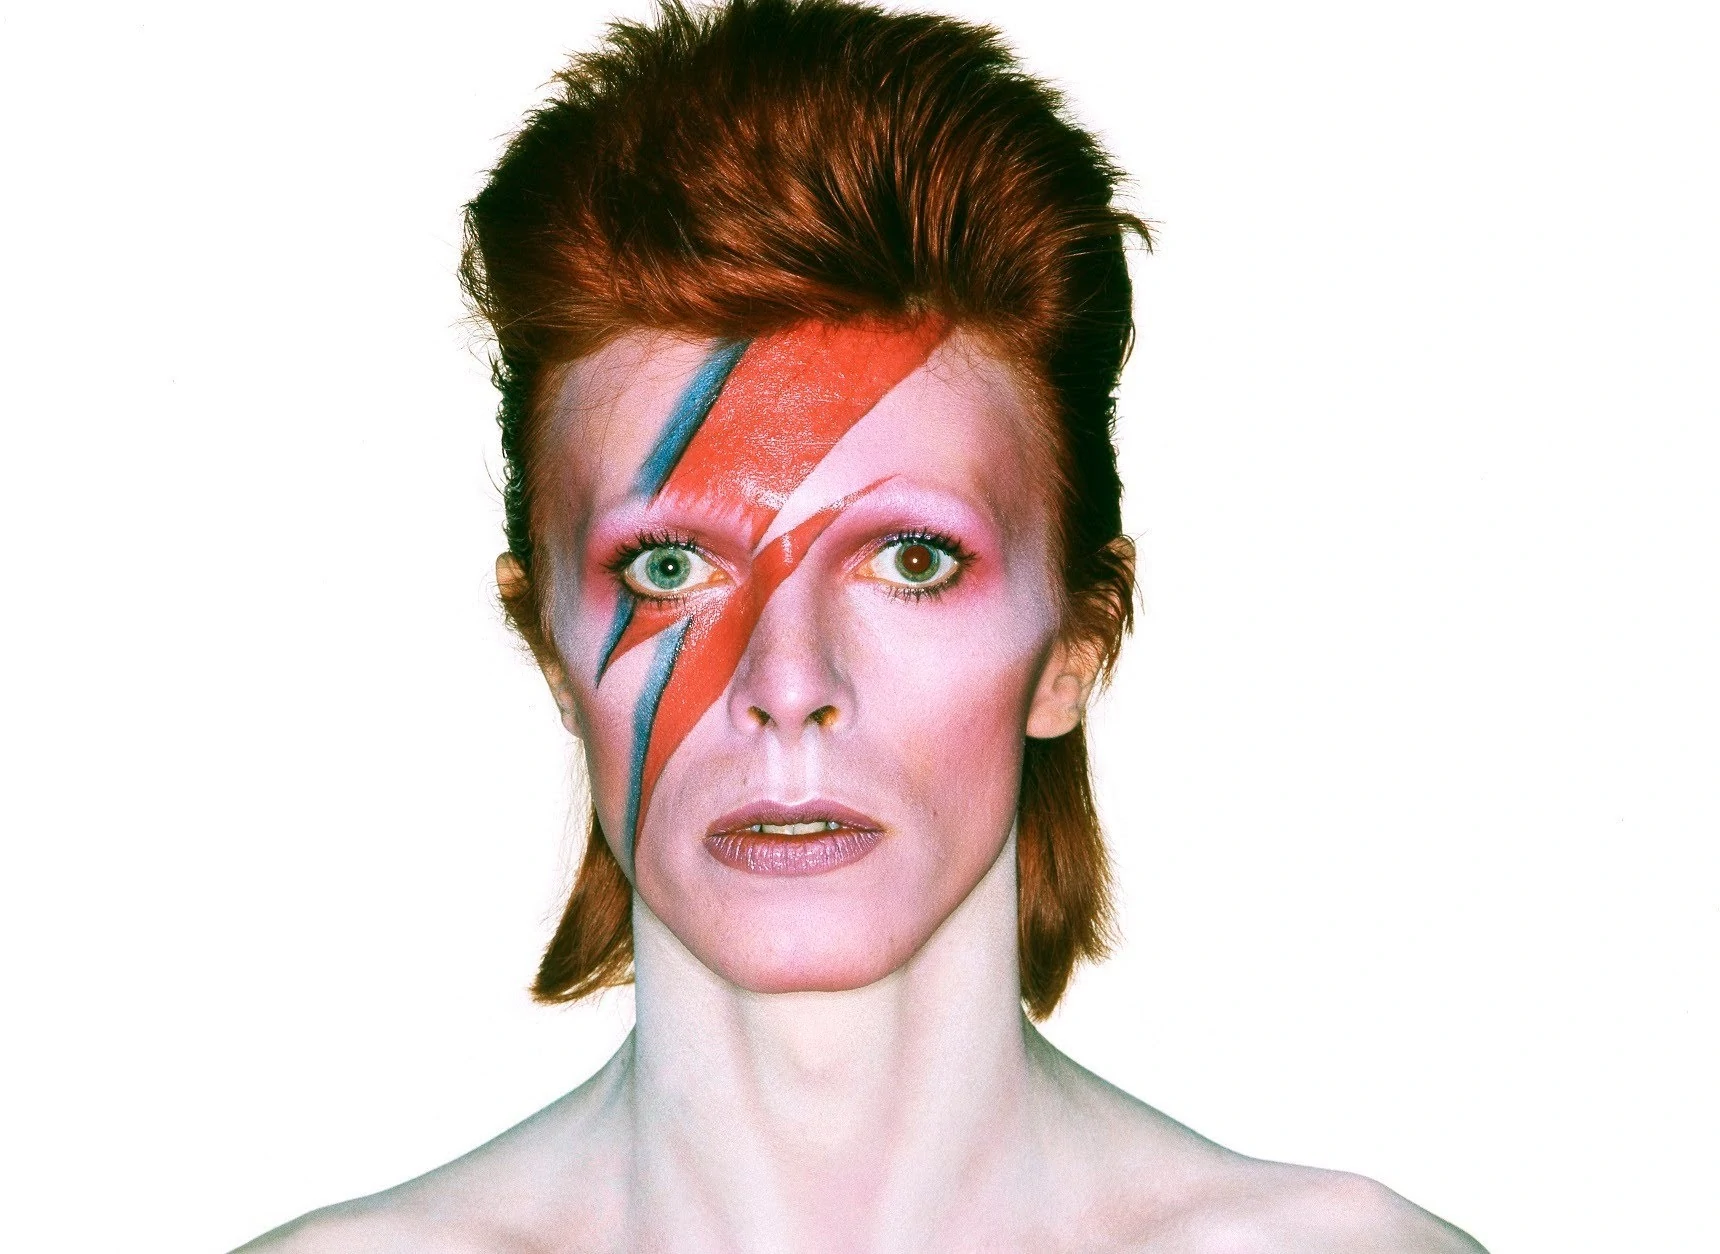 เนื้อเพลง “The Jean Genie” ที่เขียนด้วยลายมือของ David Bowie ถูกขายในราคากว่า 2 ล้านบาท